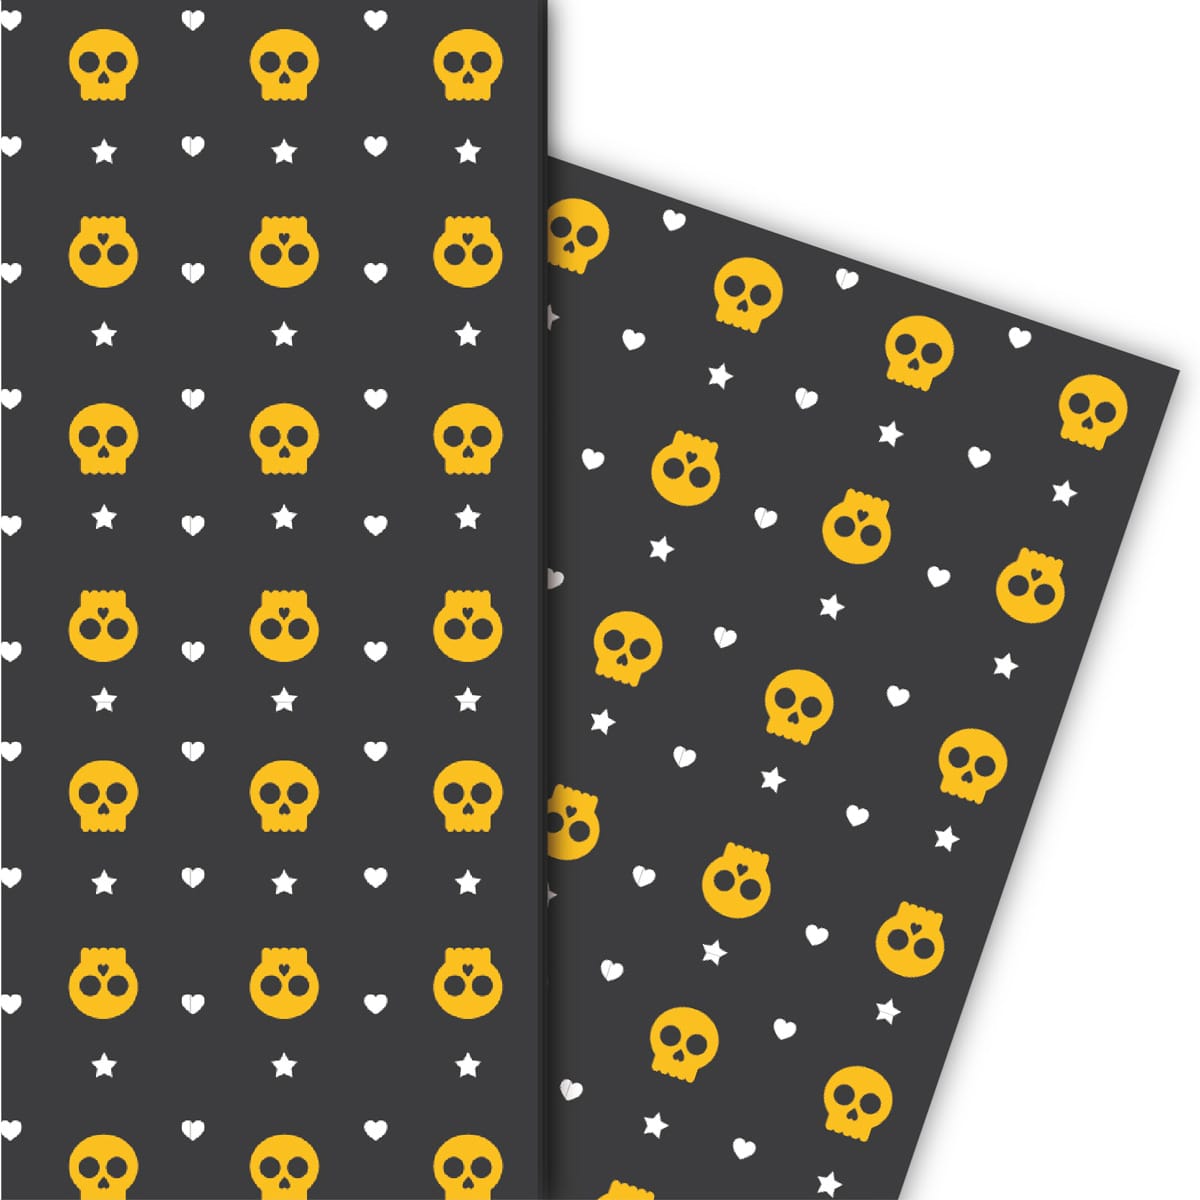 Kartenkaufrausch: Cooles Halloween Geschenkpapier mit aus unserer Halloween Papeterie in schwarz